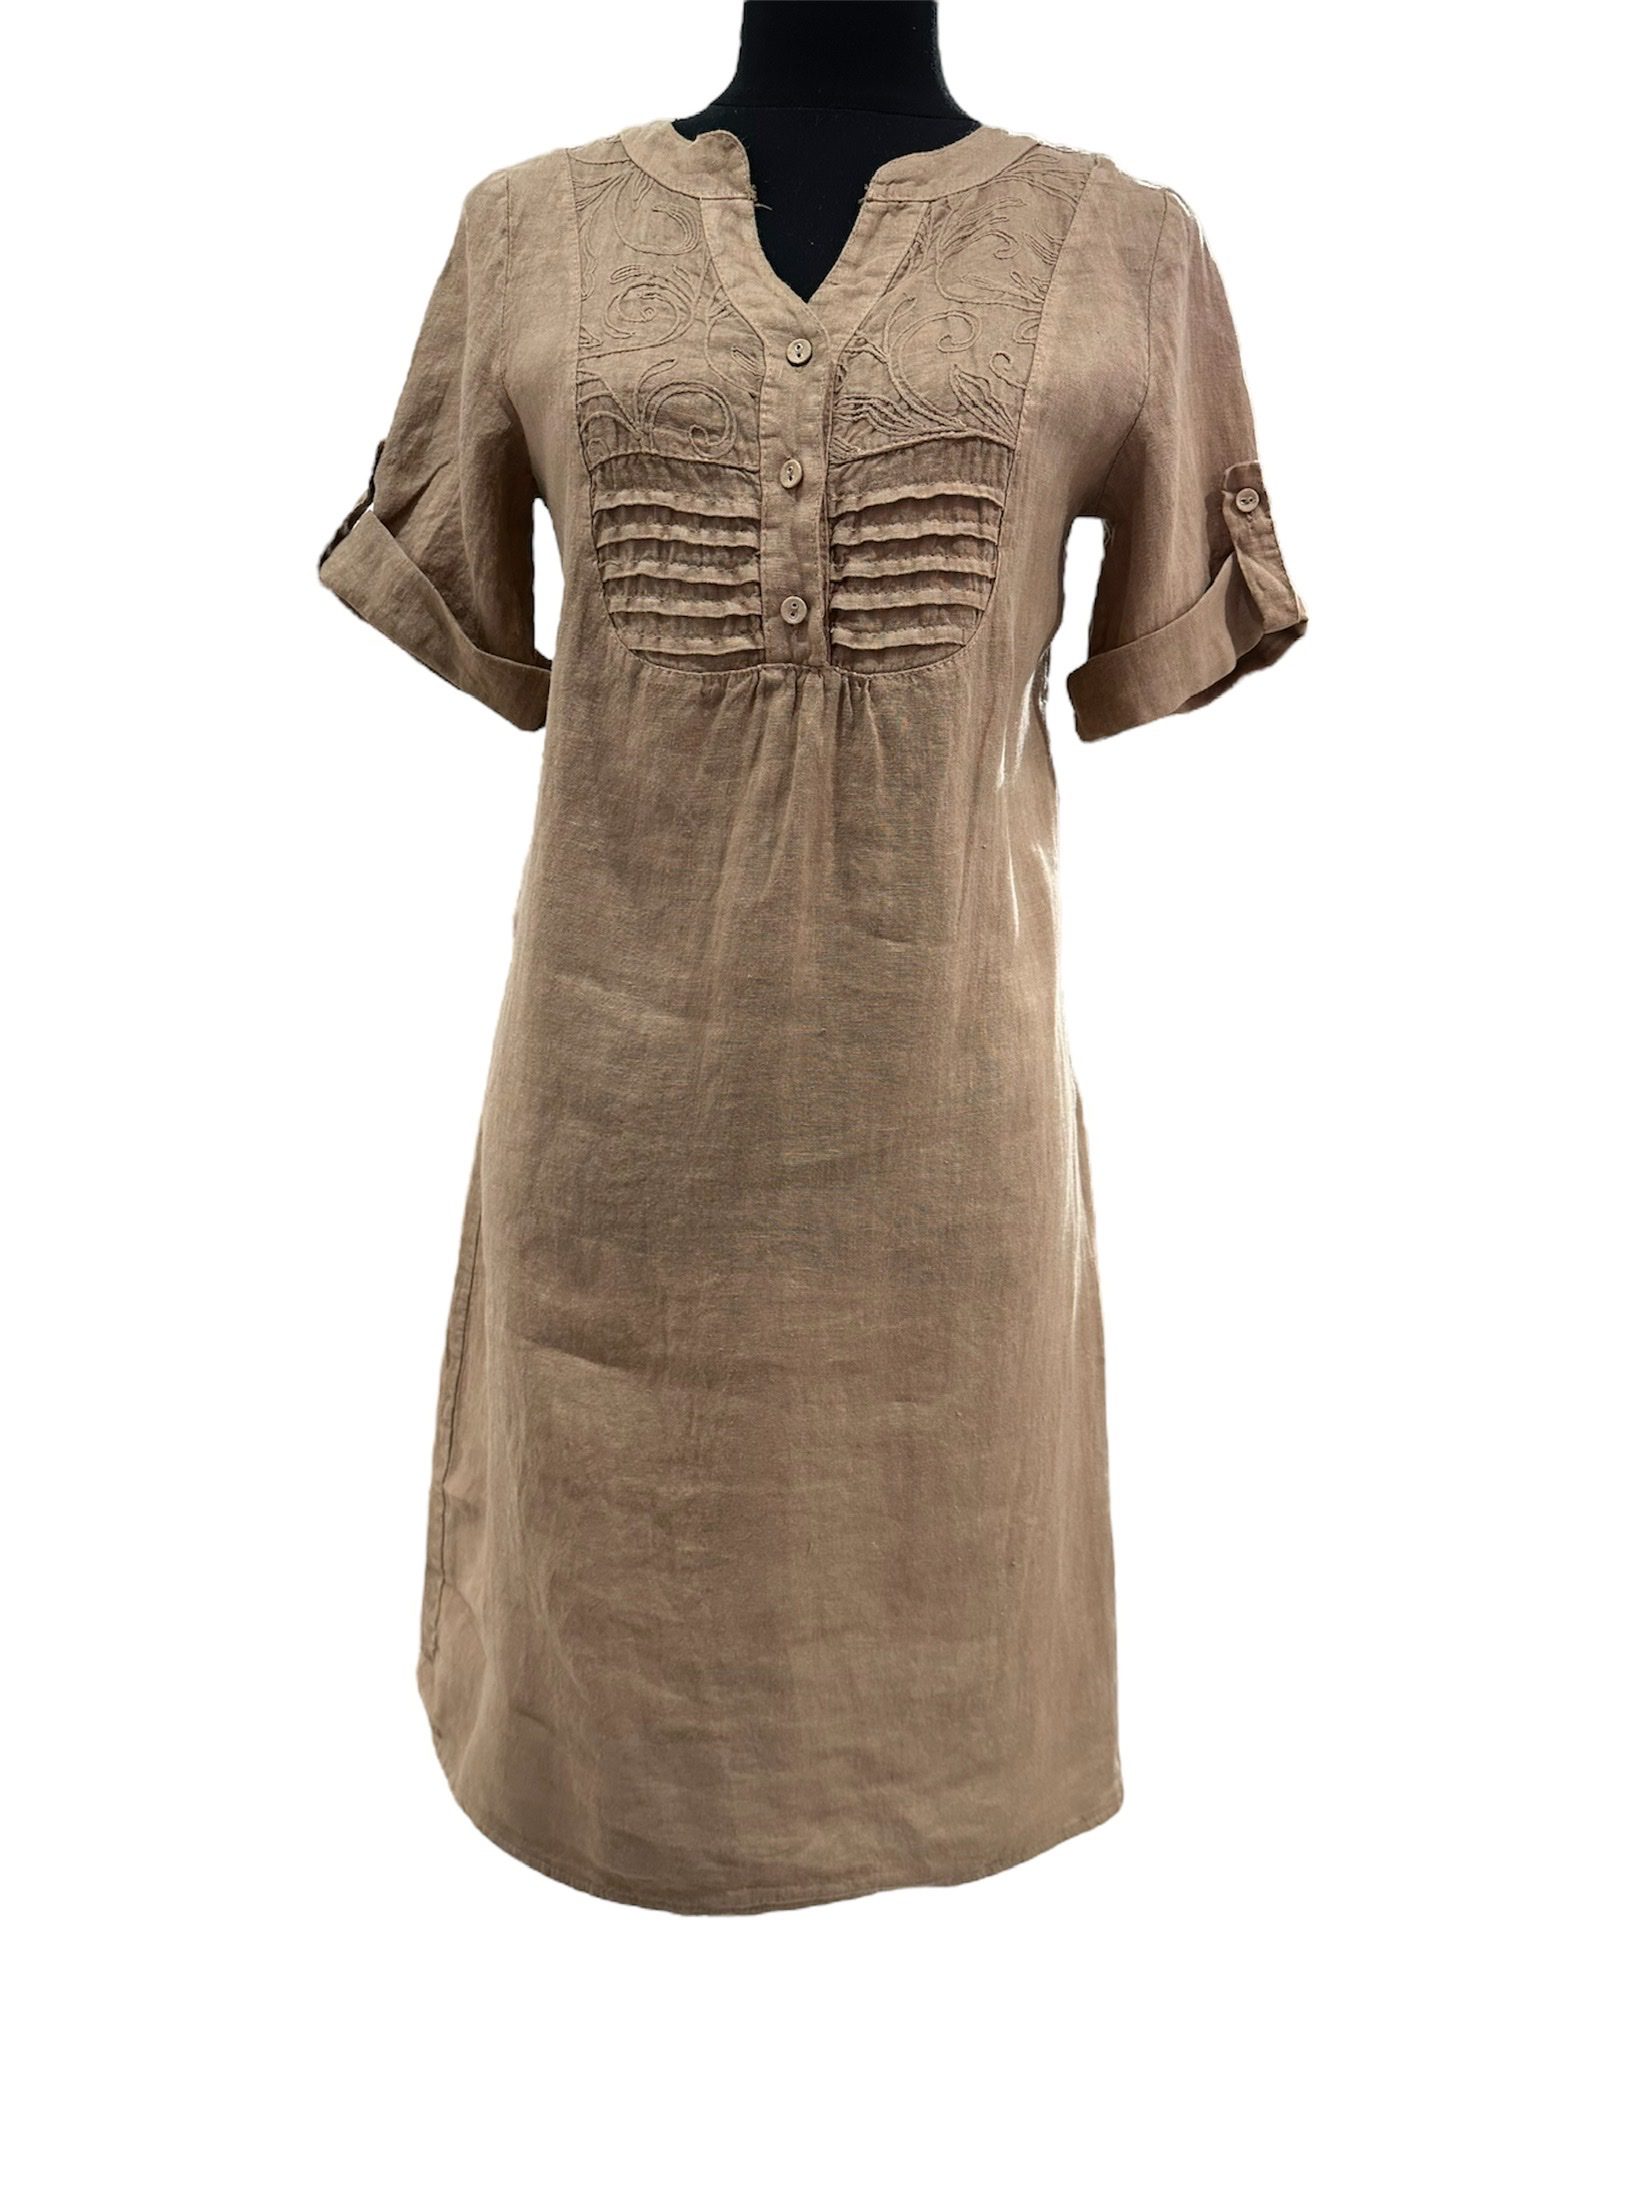 Mooi 100% linnen jurk met korte mouwen - broderie - knoppen - elastische rug - MODDER BRUIN kleur - maat 44